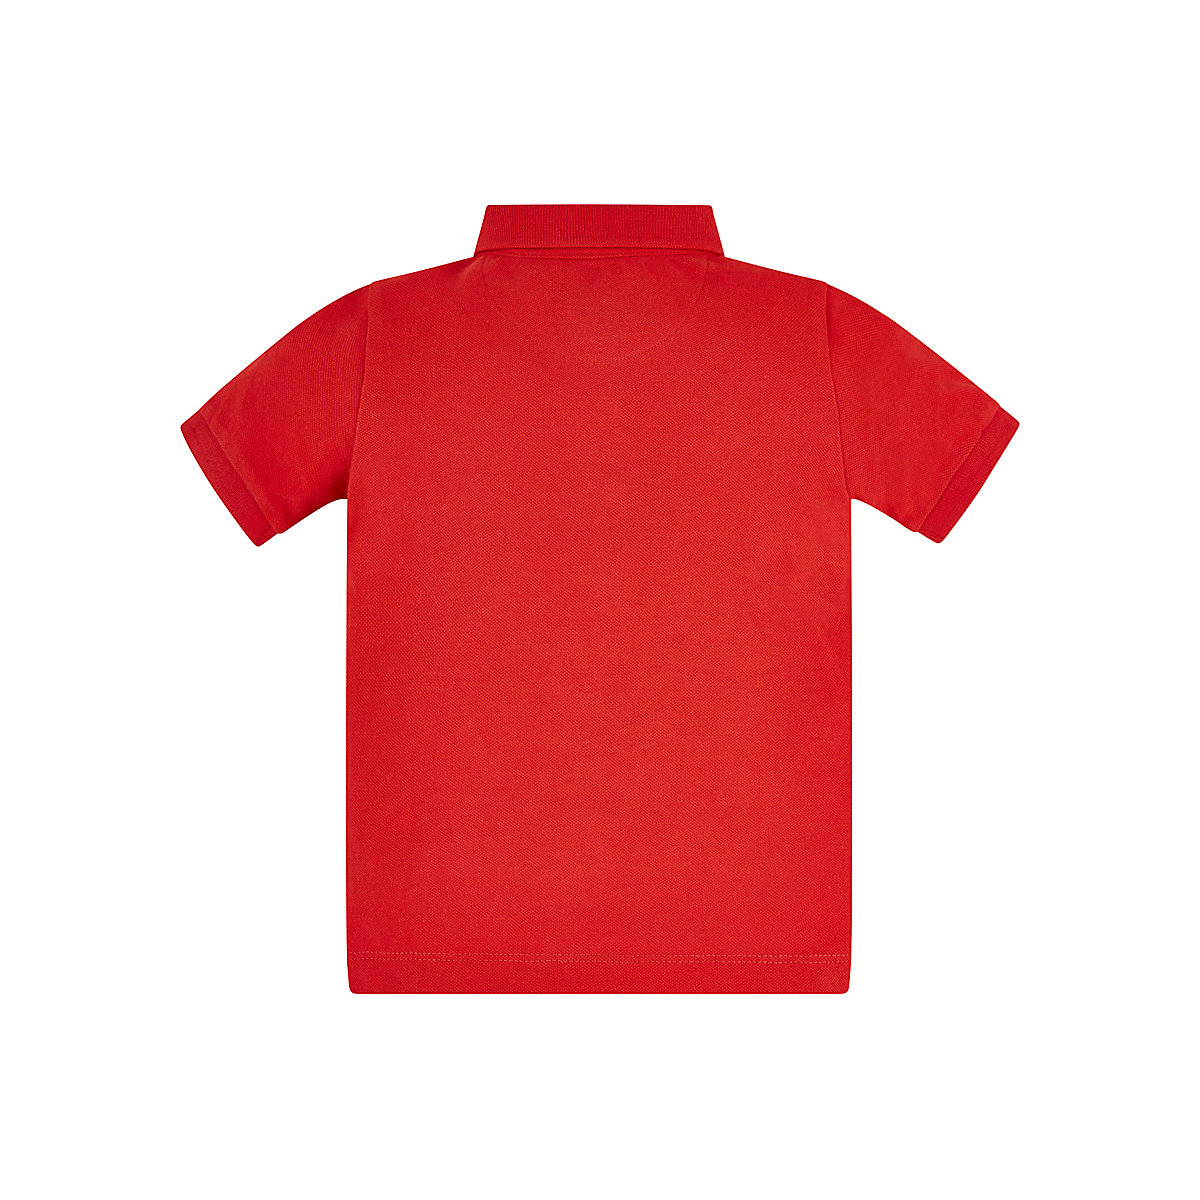 تی شرت پسرانه 27403 سایز 6 ماه تا 10 سال مارک MOTHERCARE